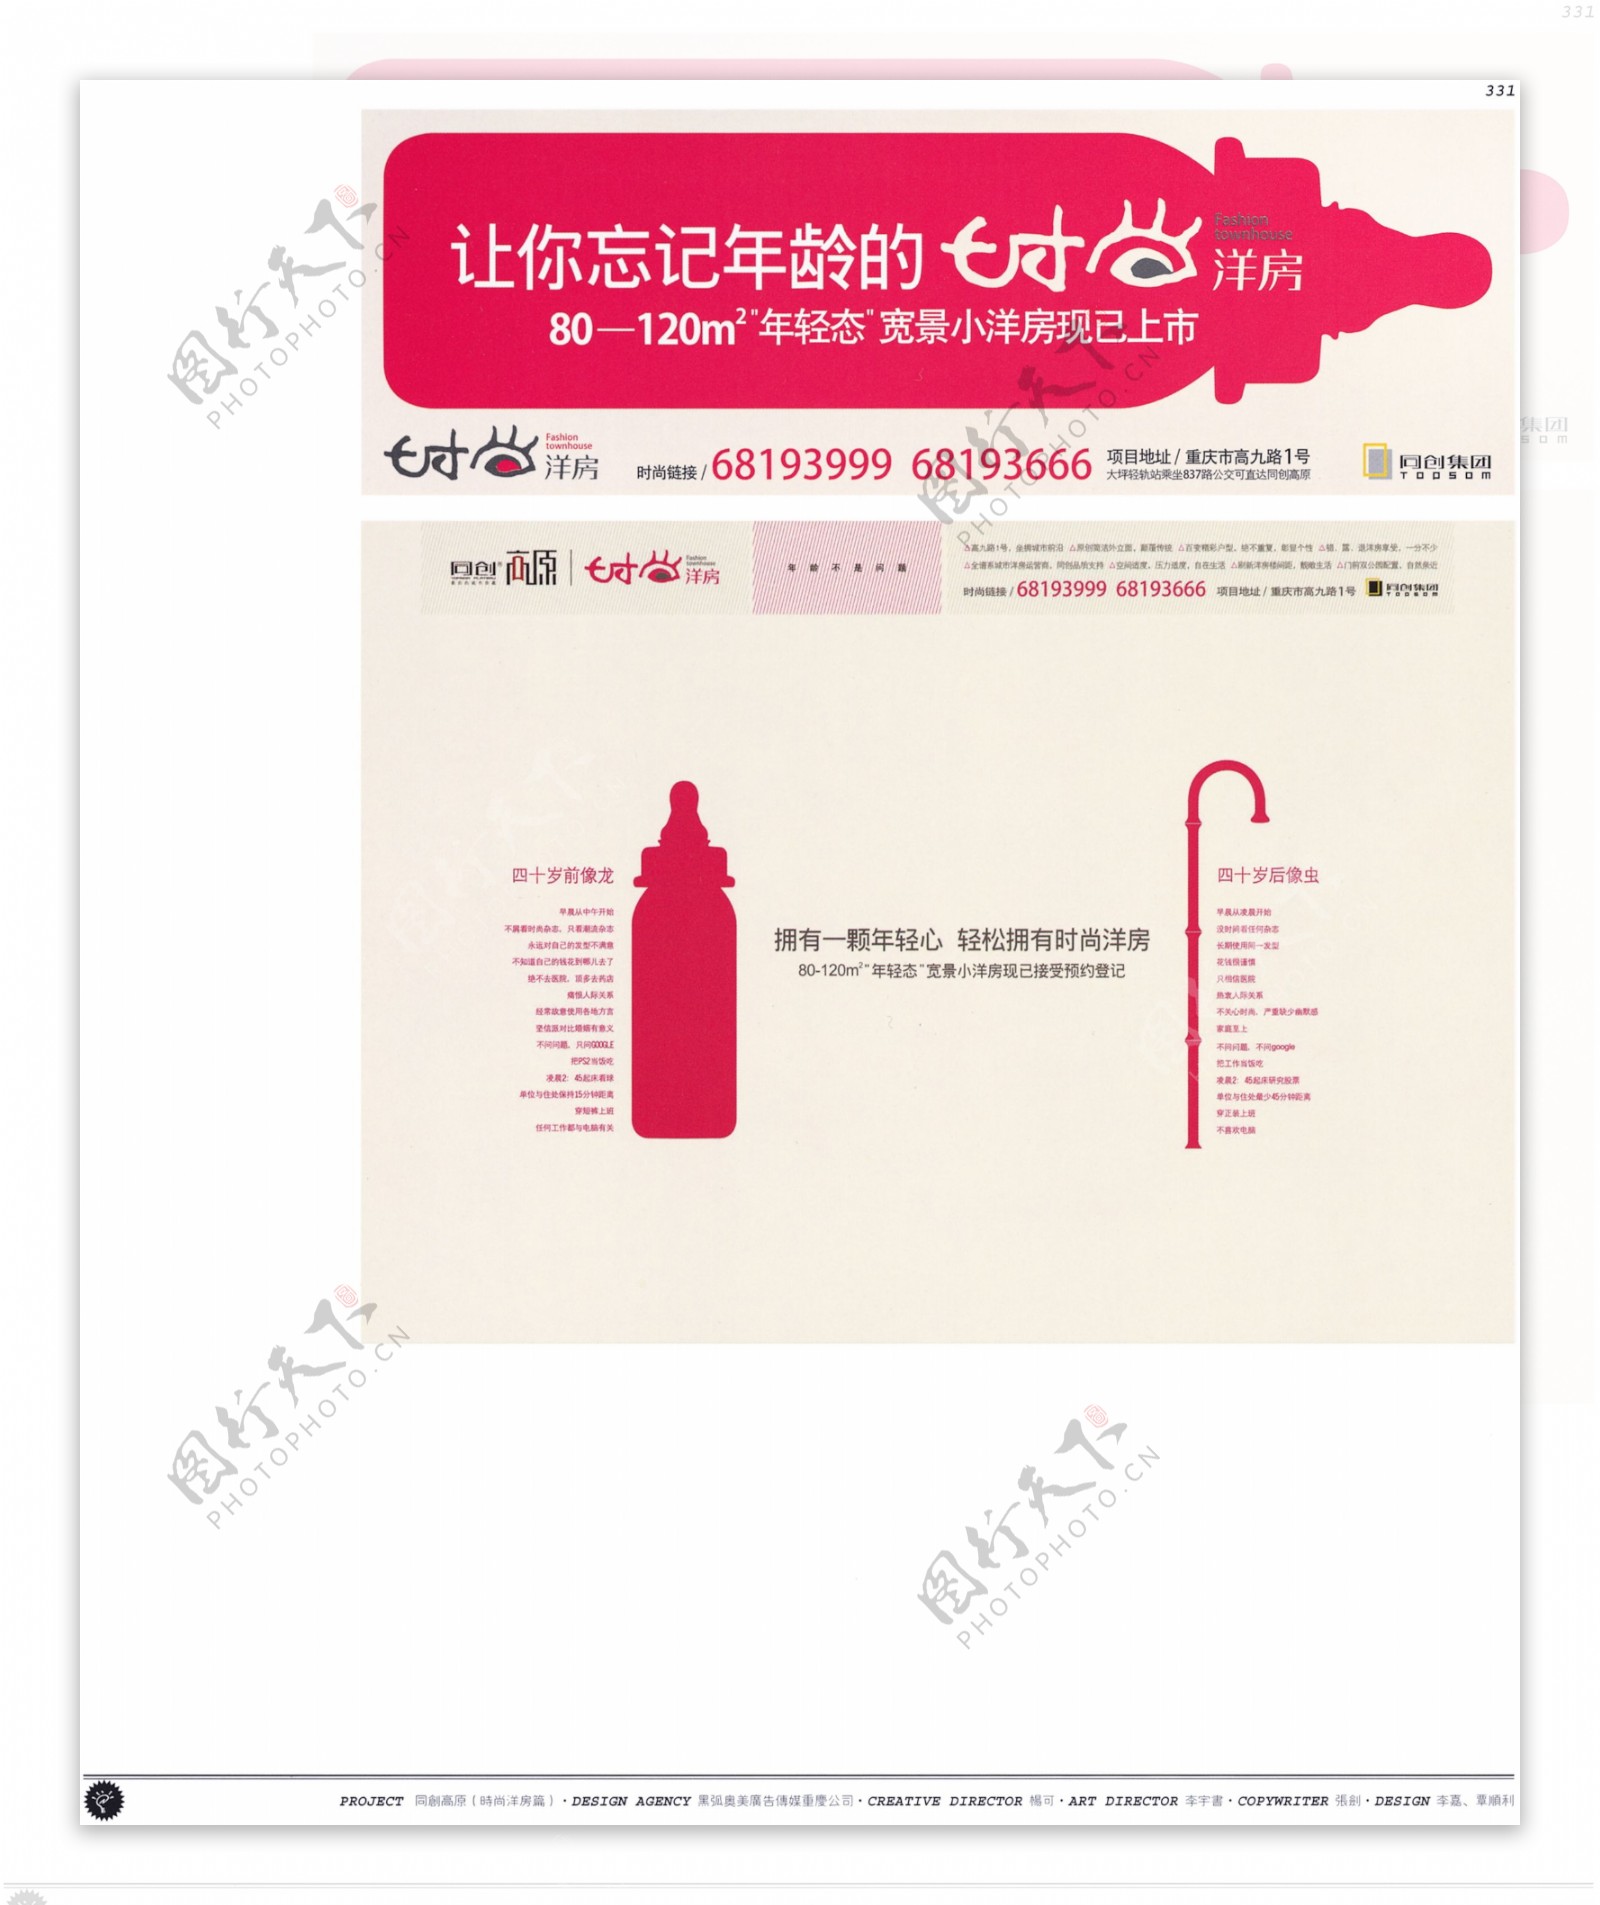 中国房地产广告年鉴第二册创意设计0325